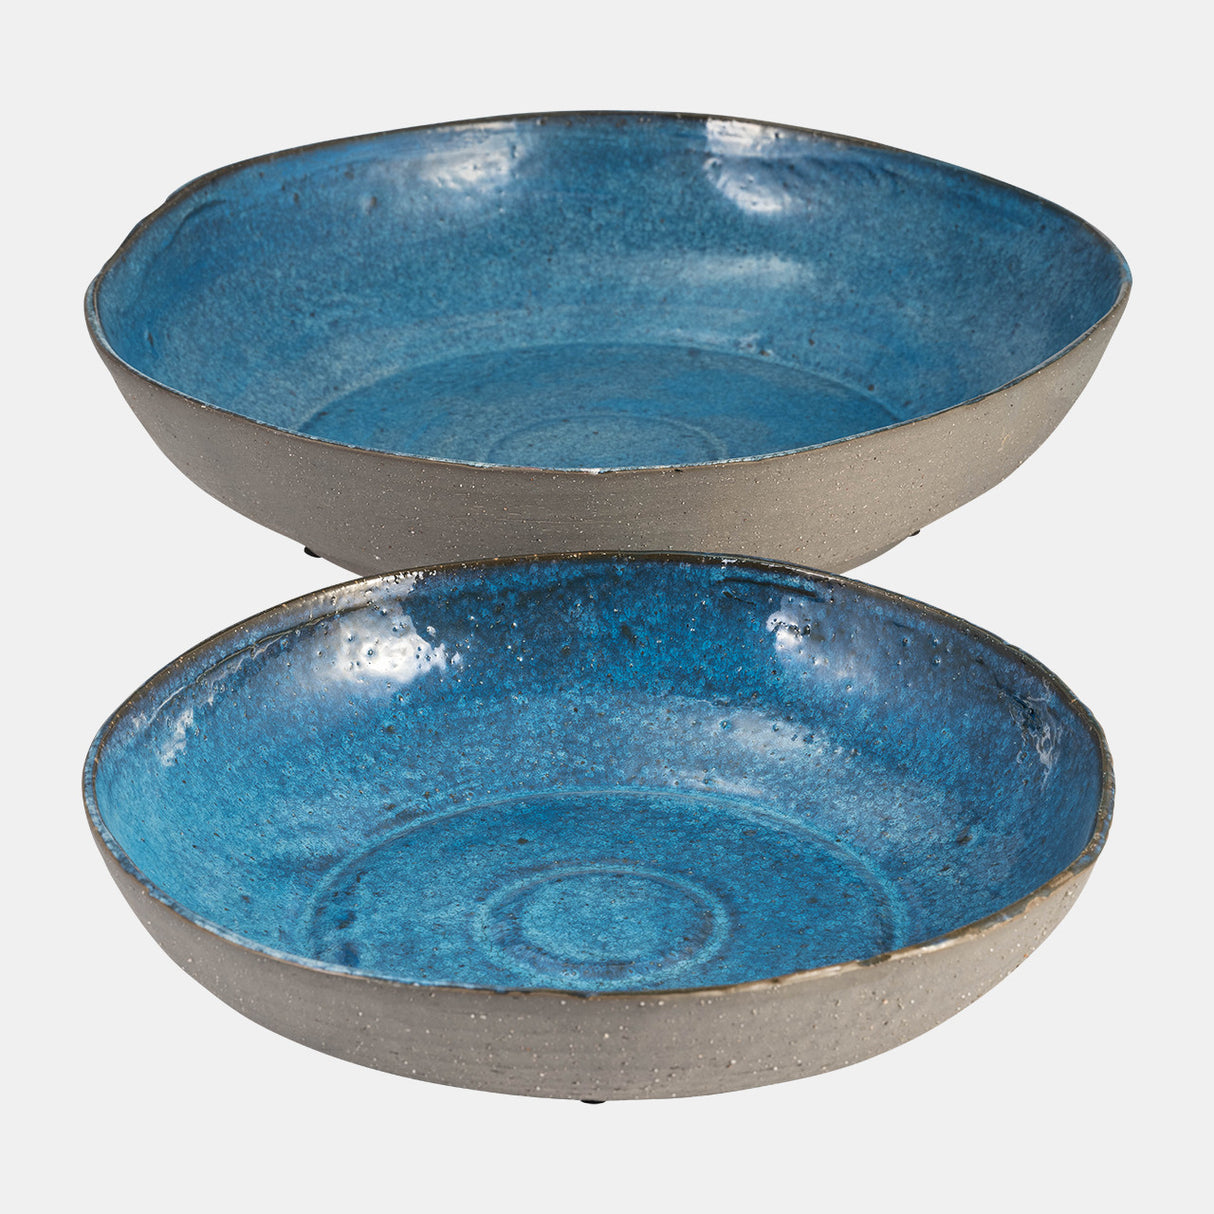 S/2 Ceramic 12/15" Bowls, Blue - 14352